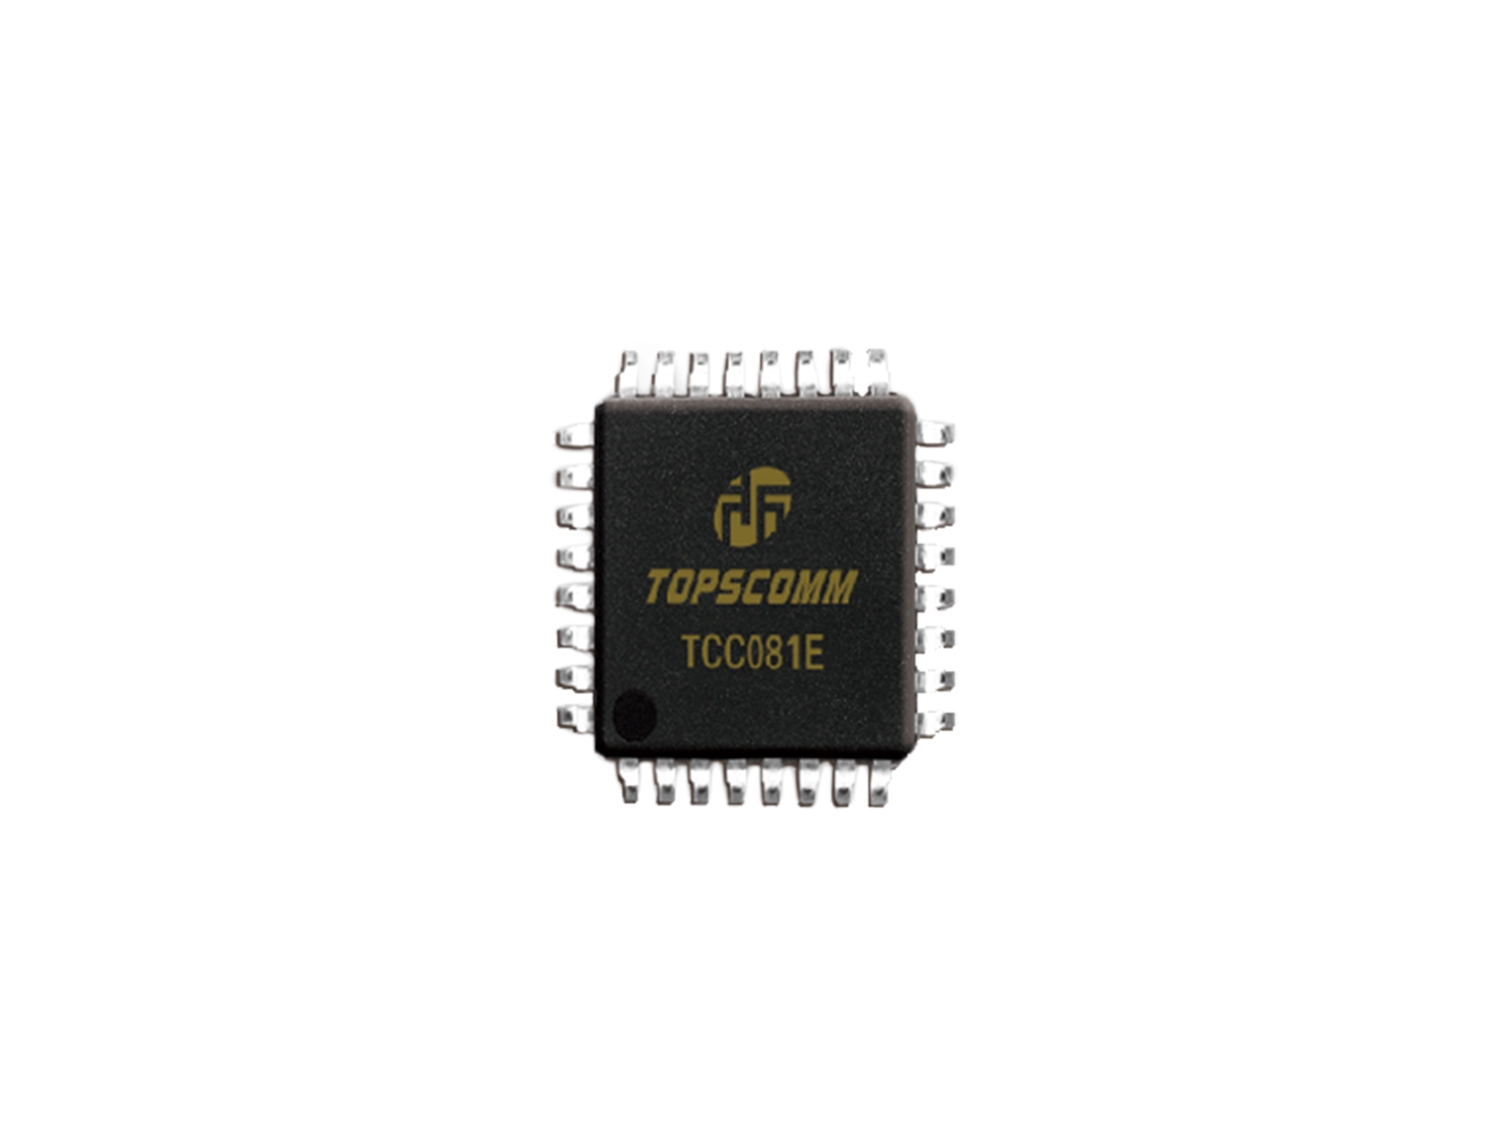 TCC081 Series PLC Communication Chips